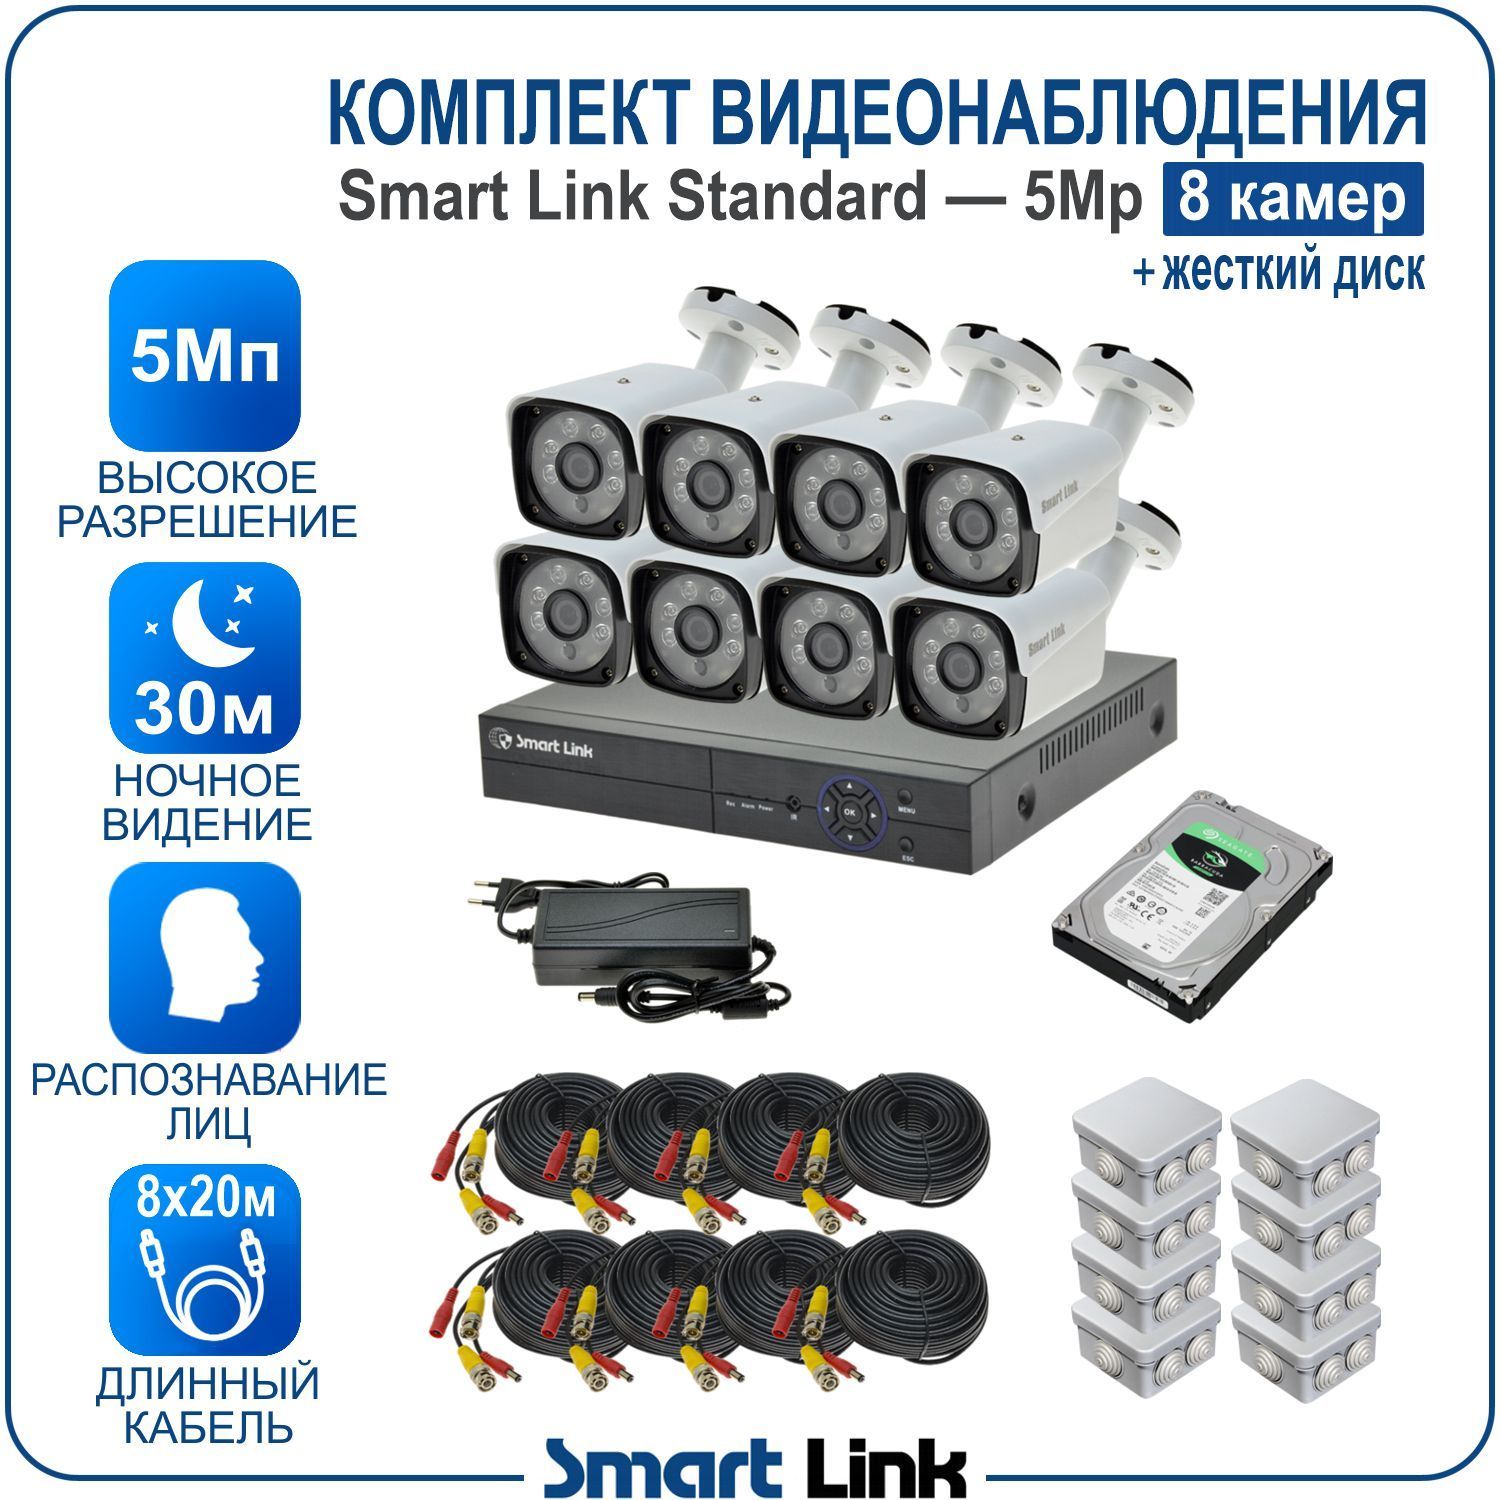 Комплект видеонаблюдения Smart Link SL-5M5N8B-H на 8 уличных 5Мп камер + жесткий диск комплект видеонаблюдения smart link sl 5m5n8b h на 8 уличных 5мп камер жесткий диск